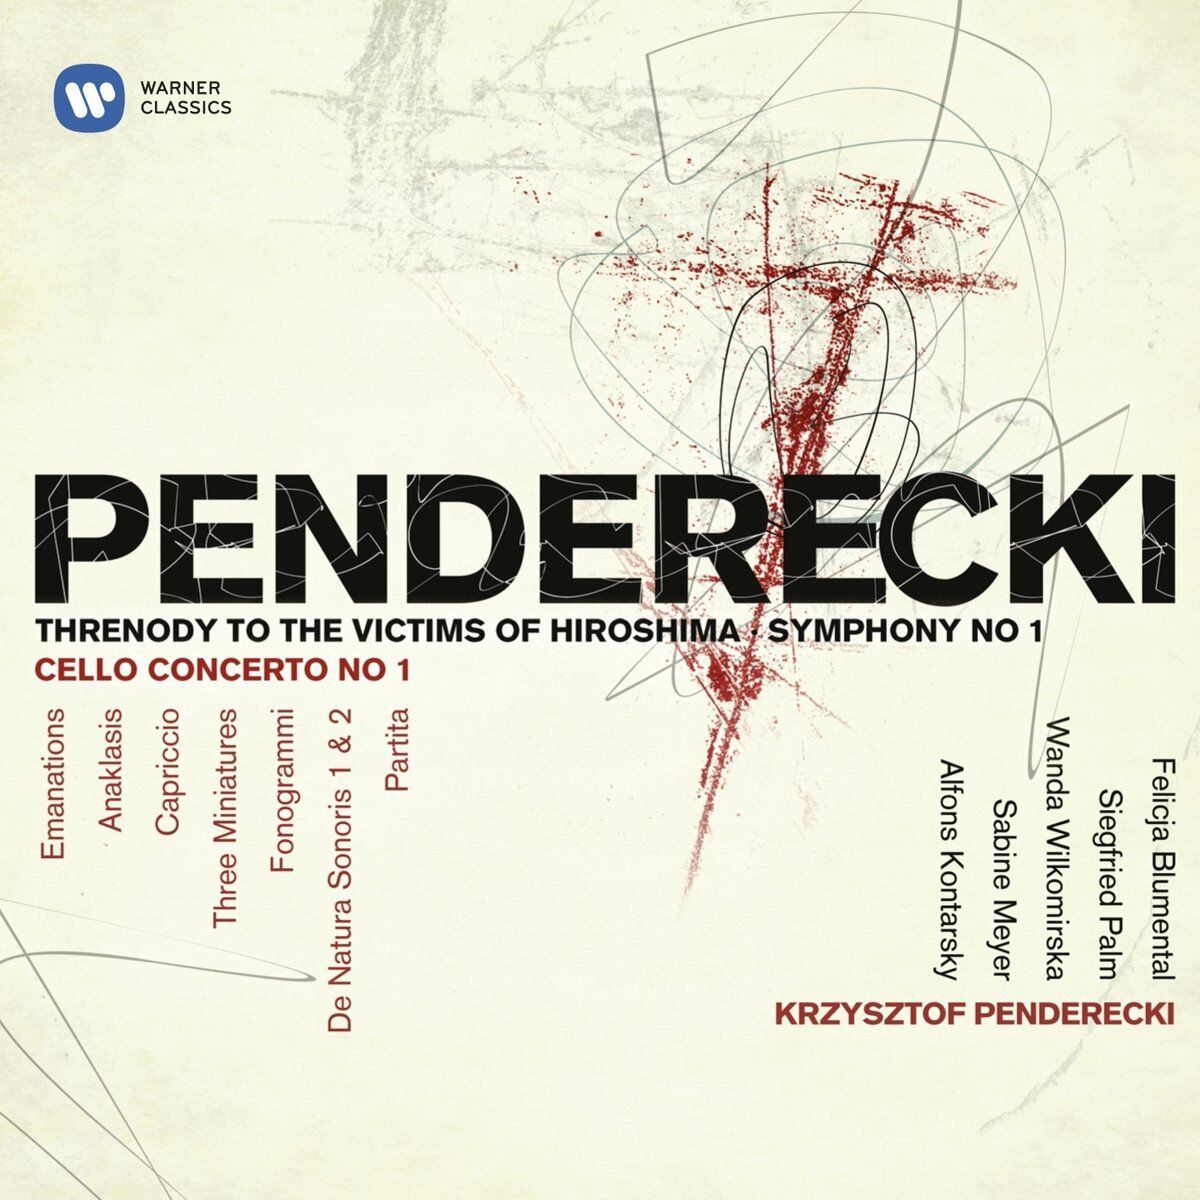 Portada del álbum con la composición 'Treno a las víctimas de Hiroshima', de Krzysztof Penderecki.